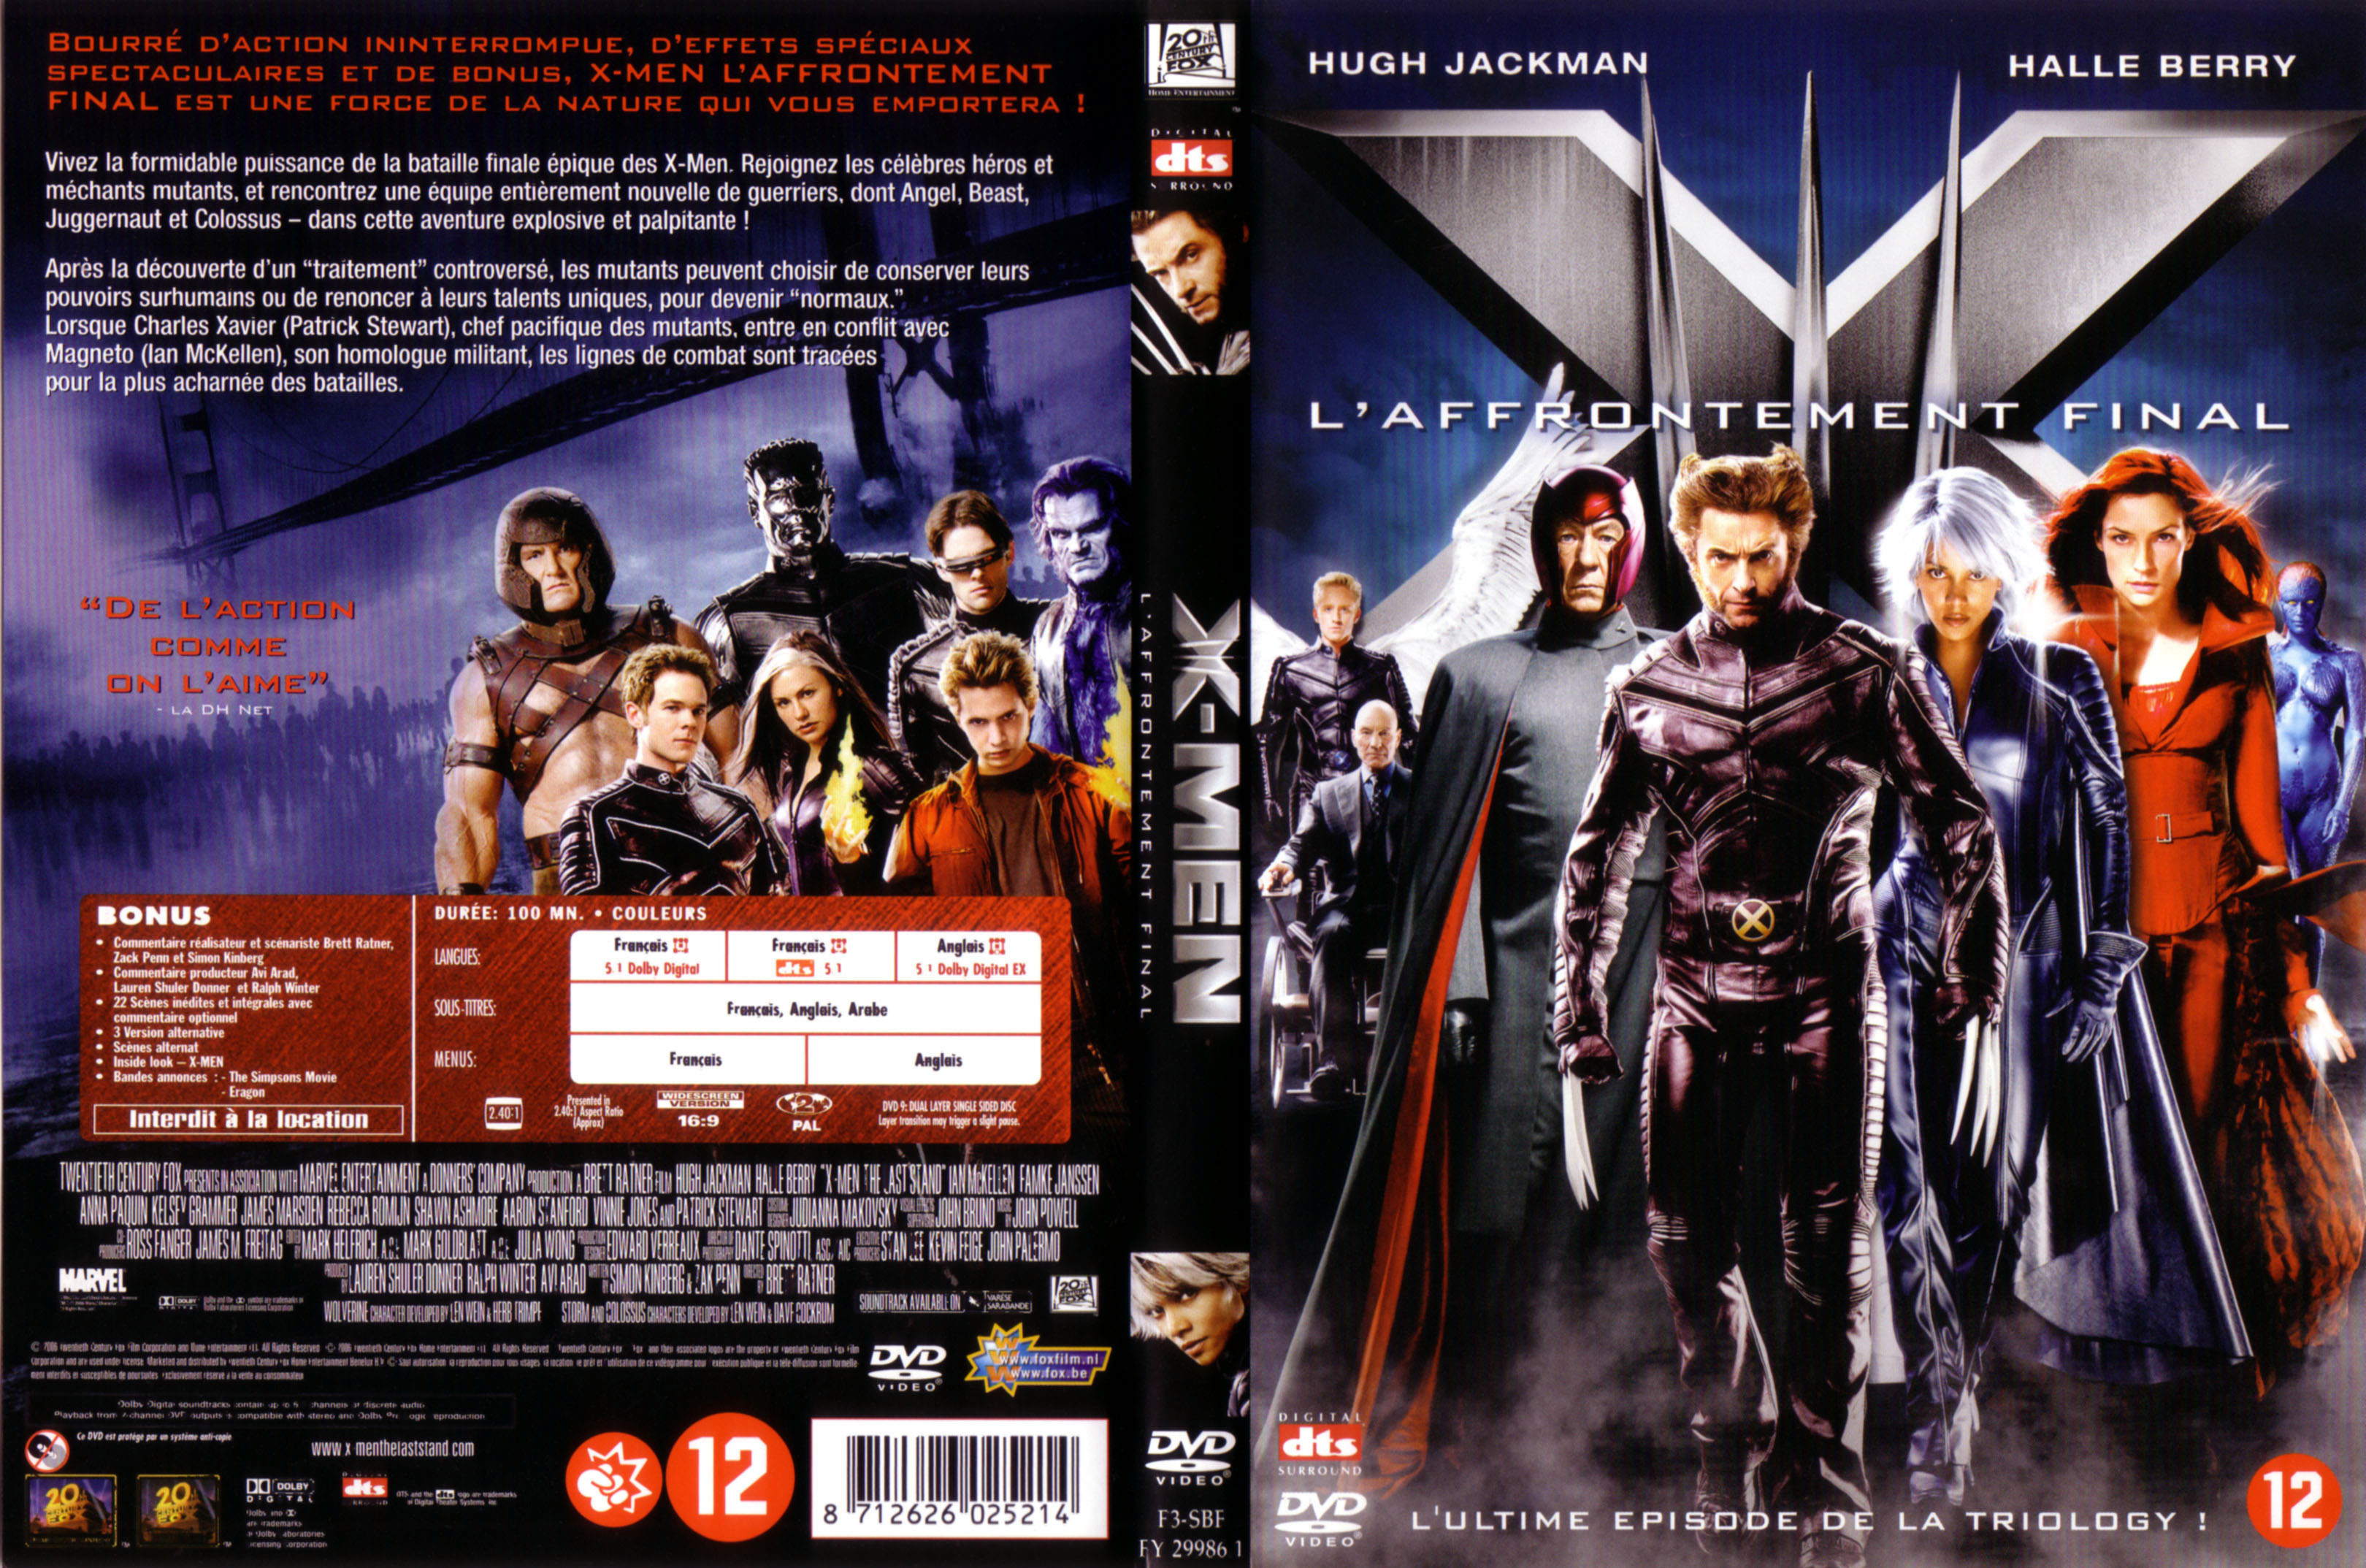 Jaquette DVD X-men 3 v4